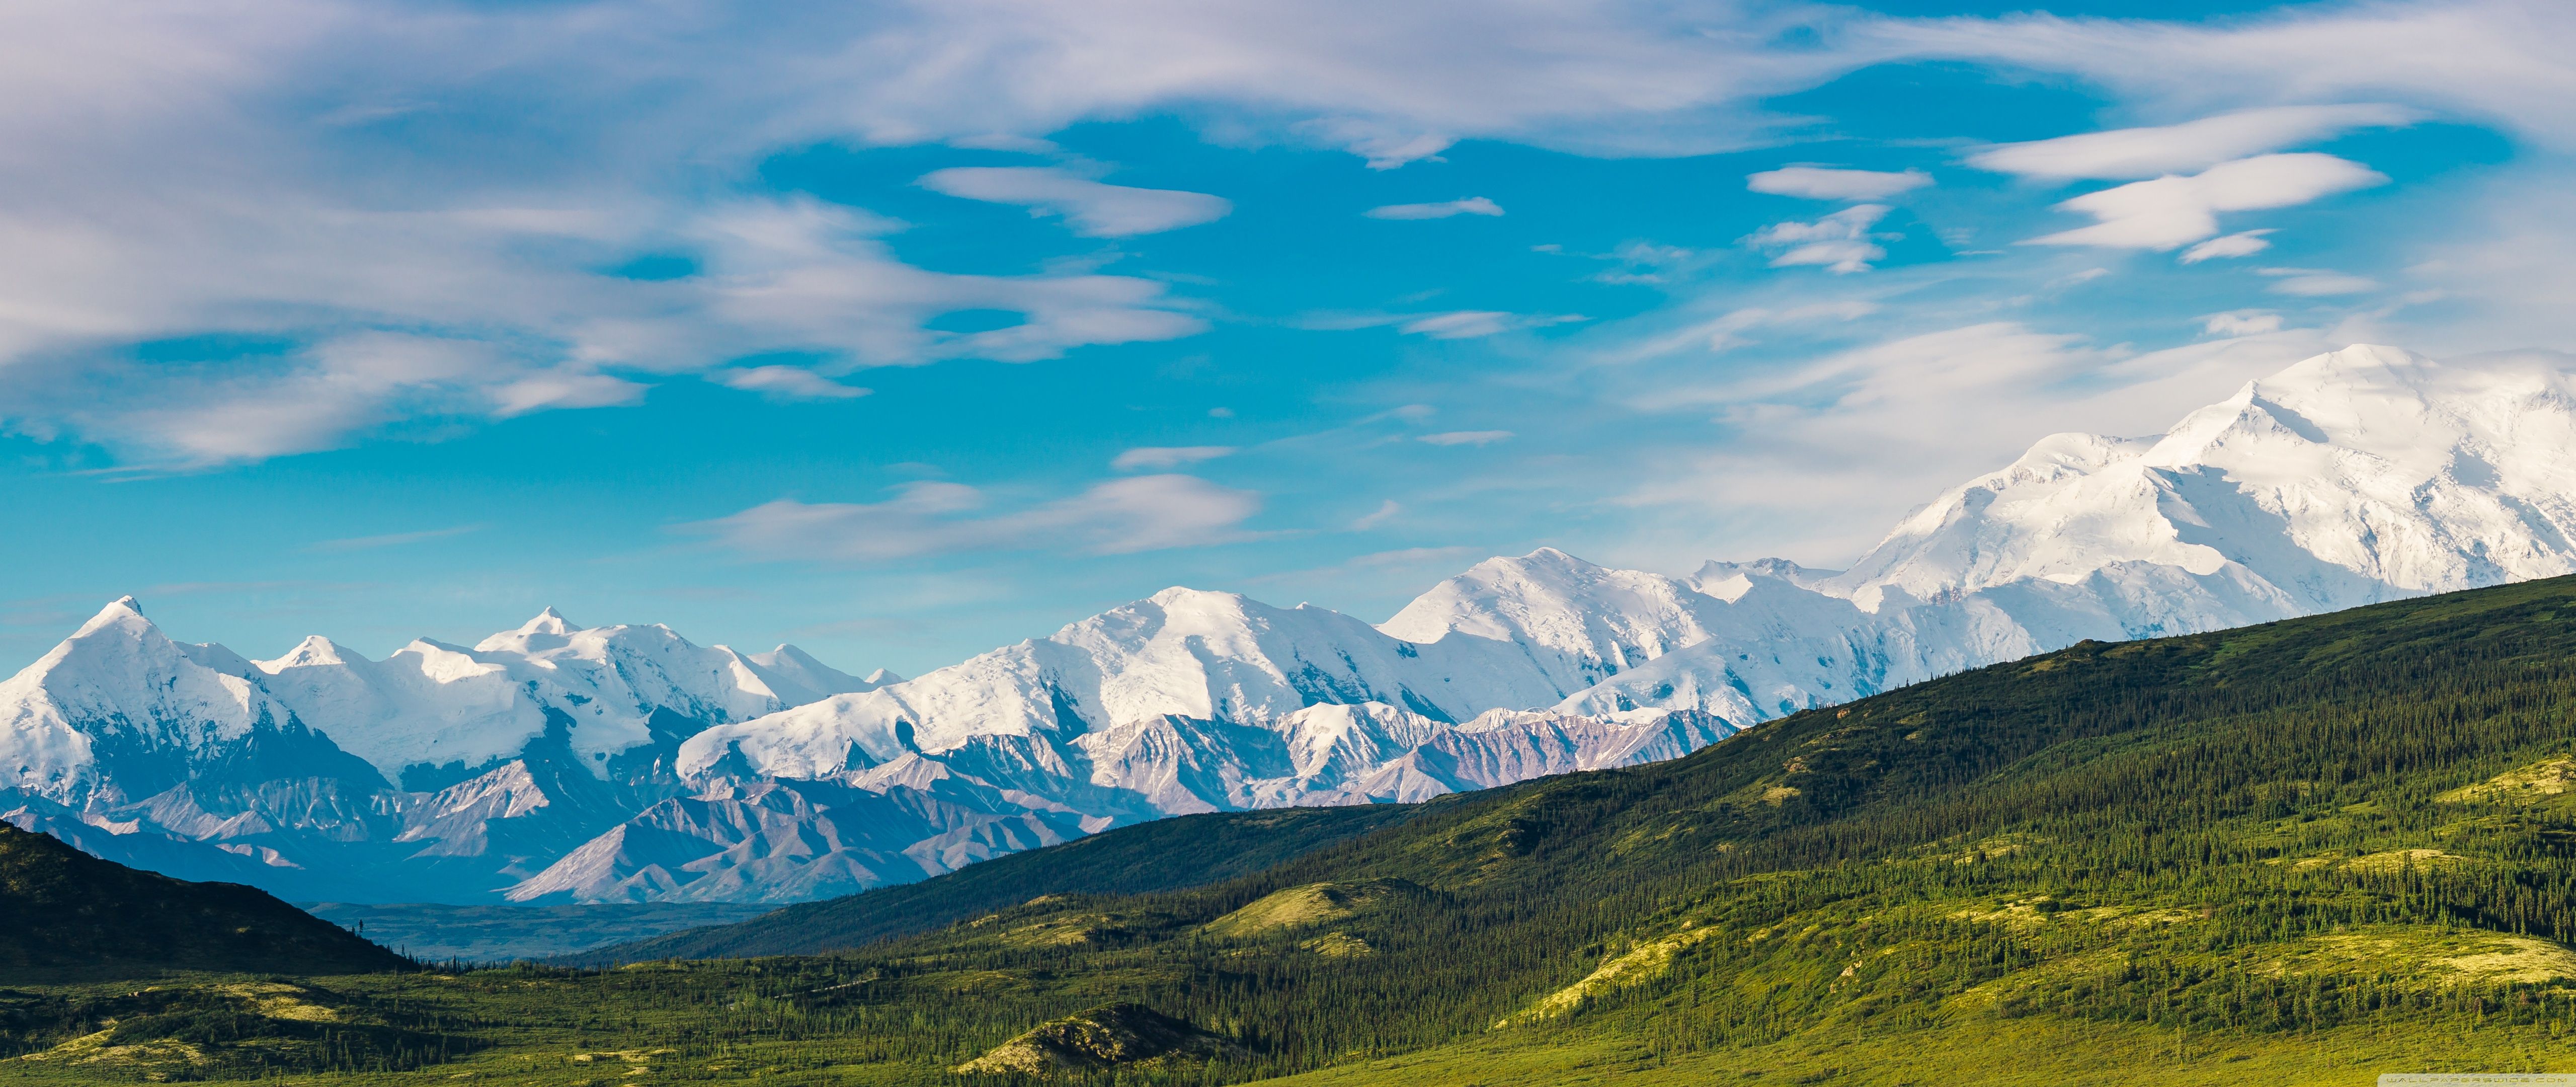 Лазоревые горы. Национальный парк Денали Аляска. Хищники горы Денали. Горы вид сверху. Природа.